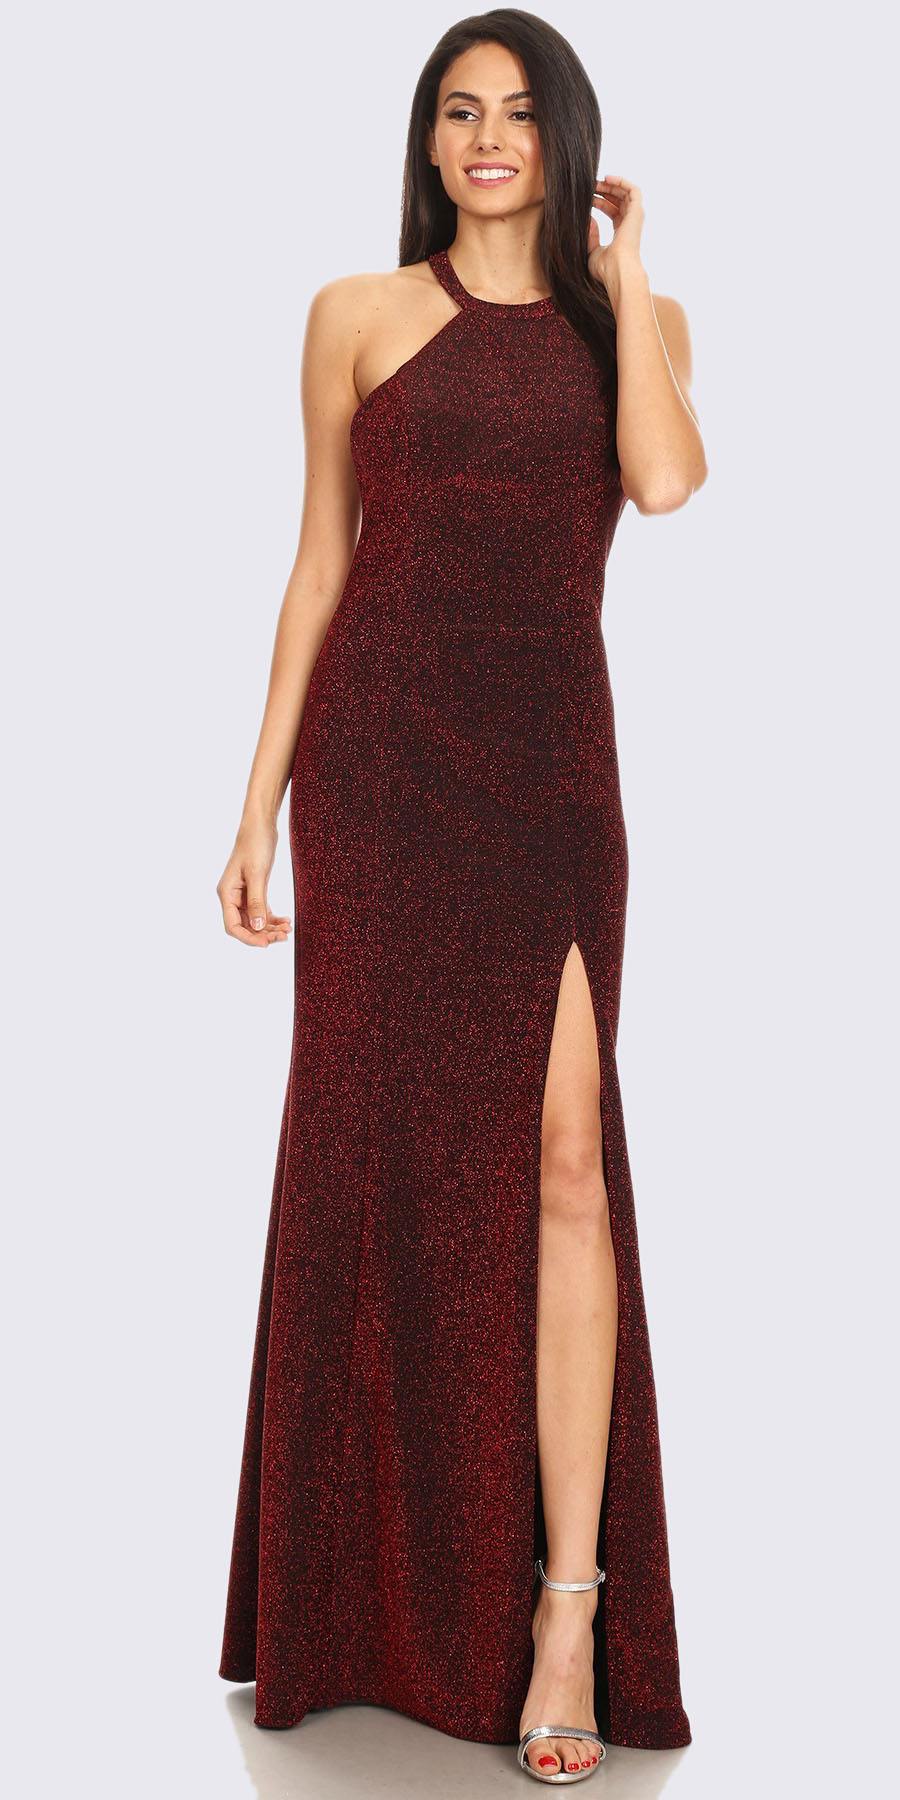 burgundy shimmer dress